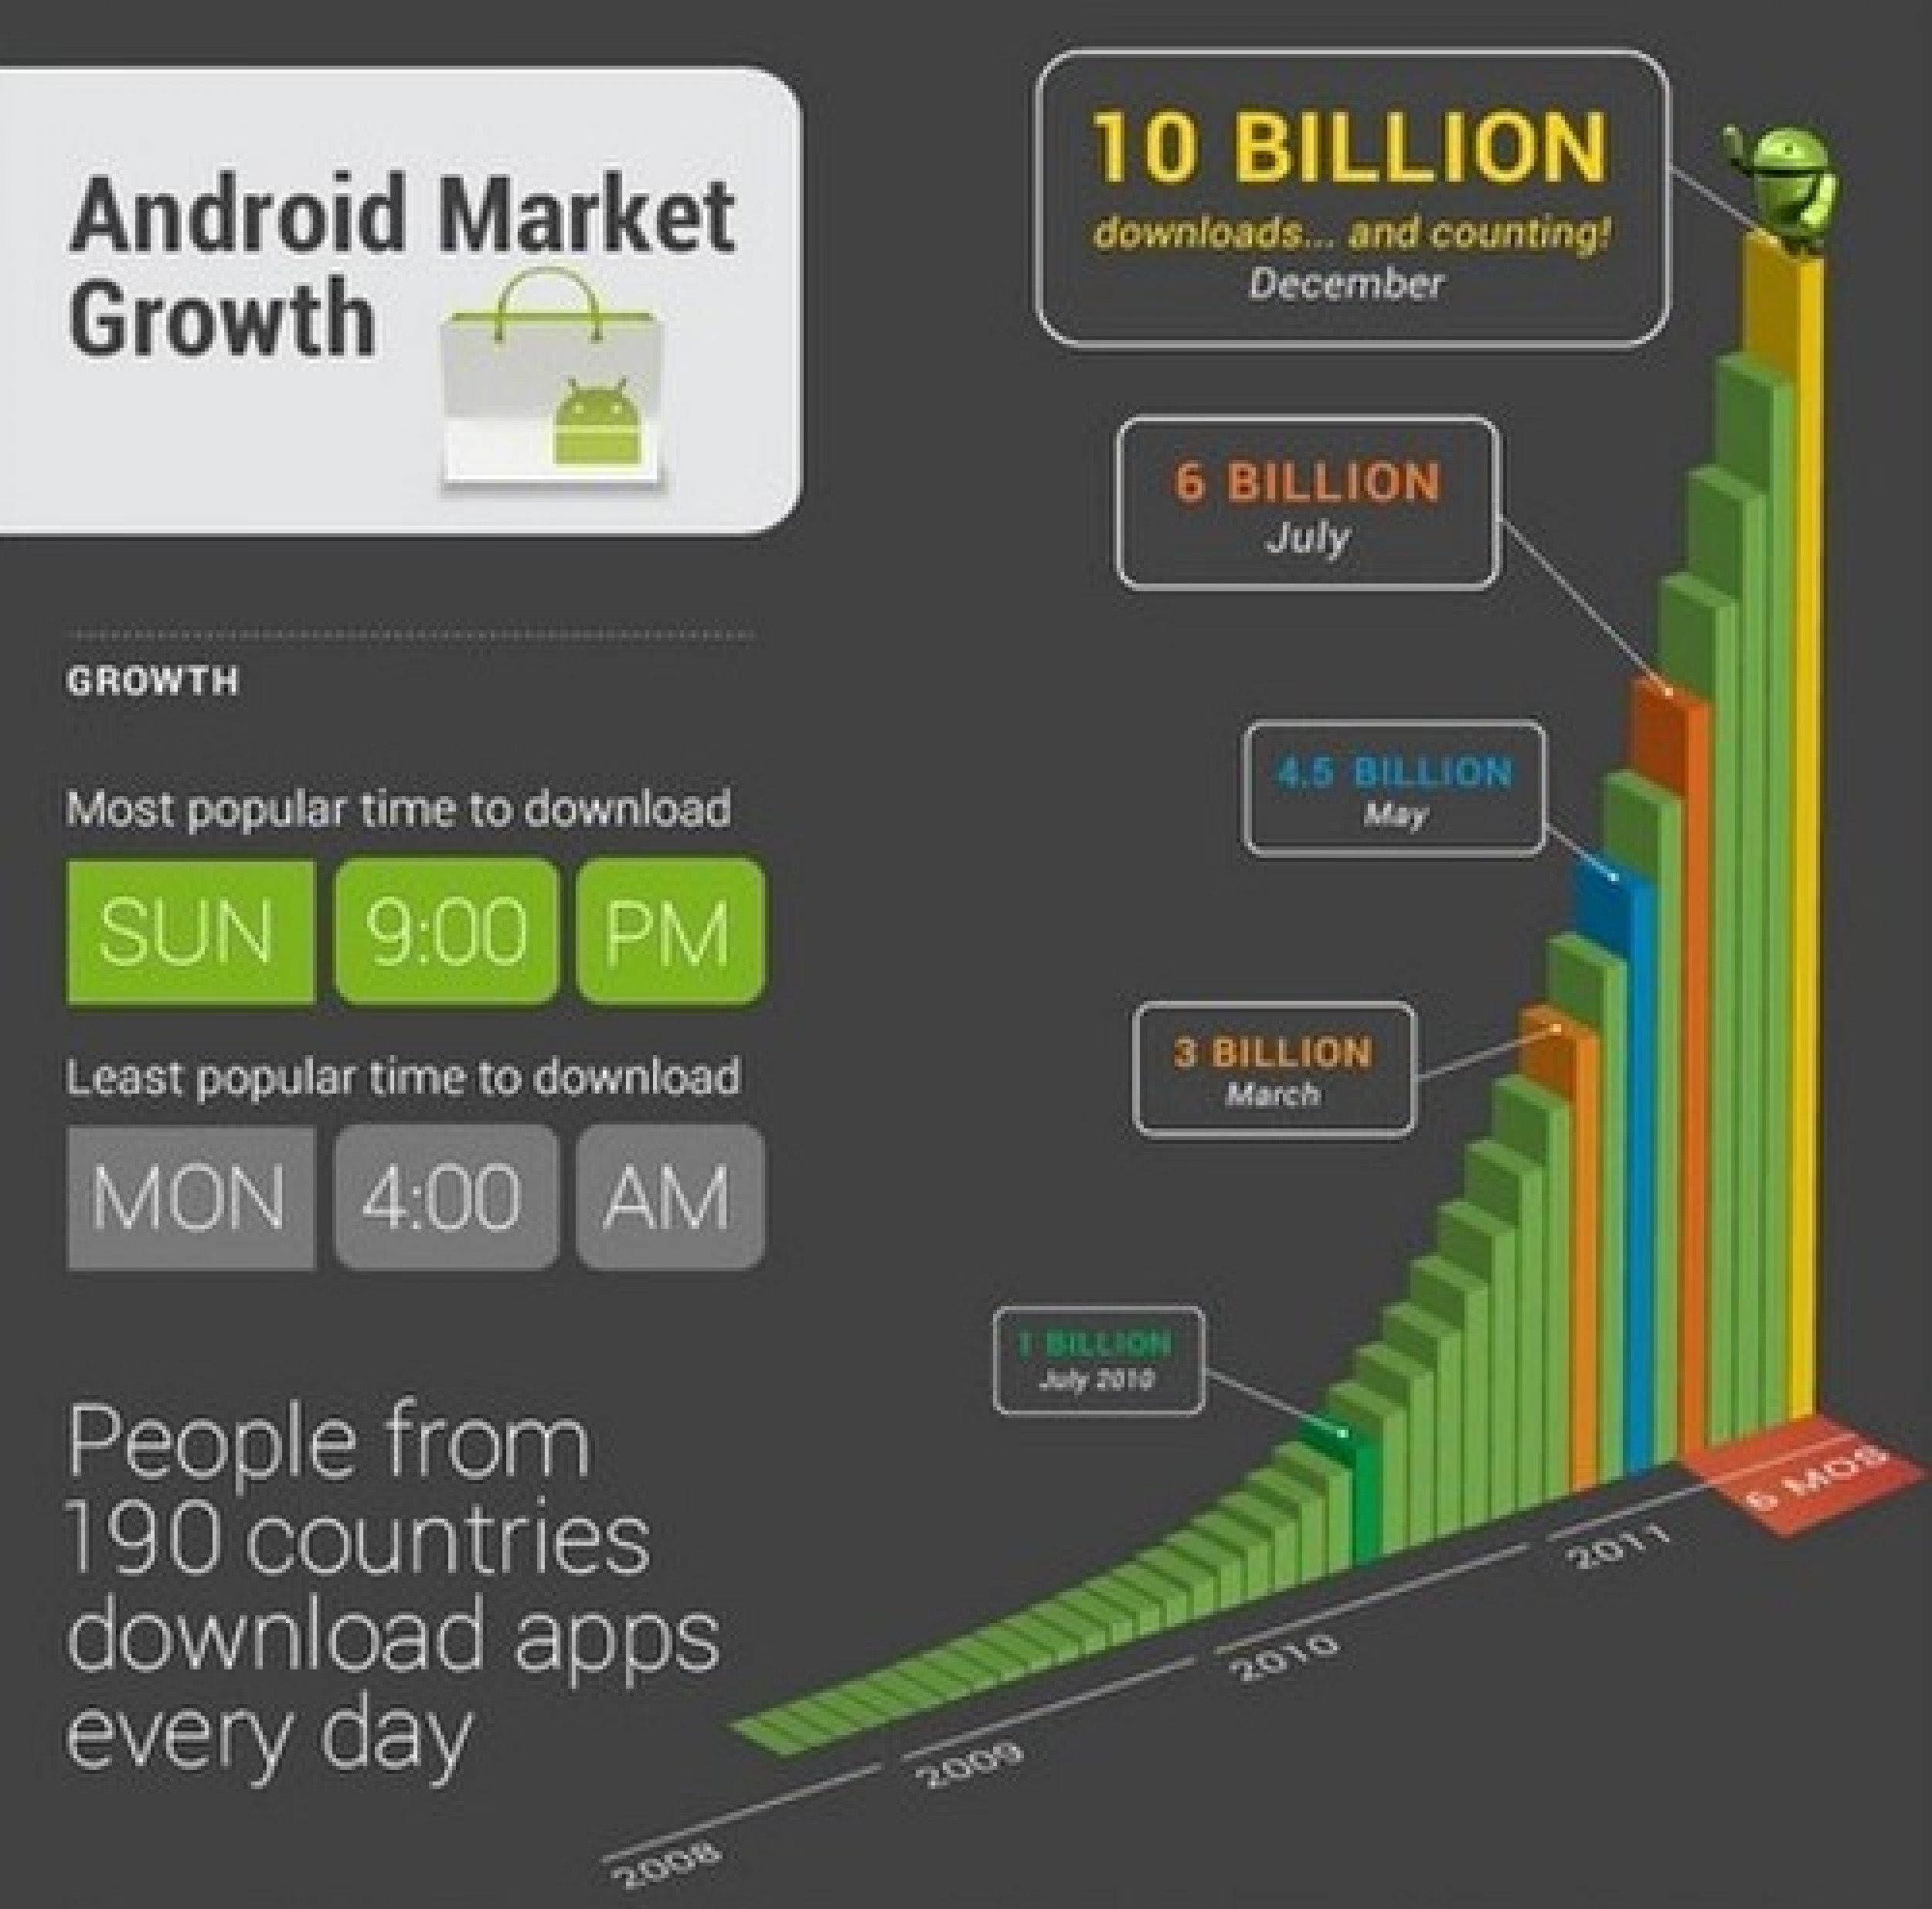 Googles infographic